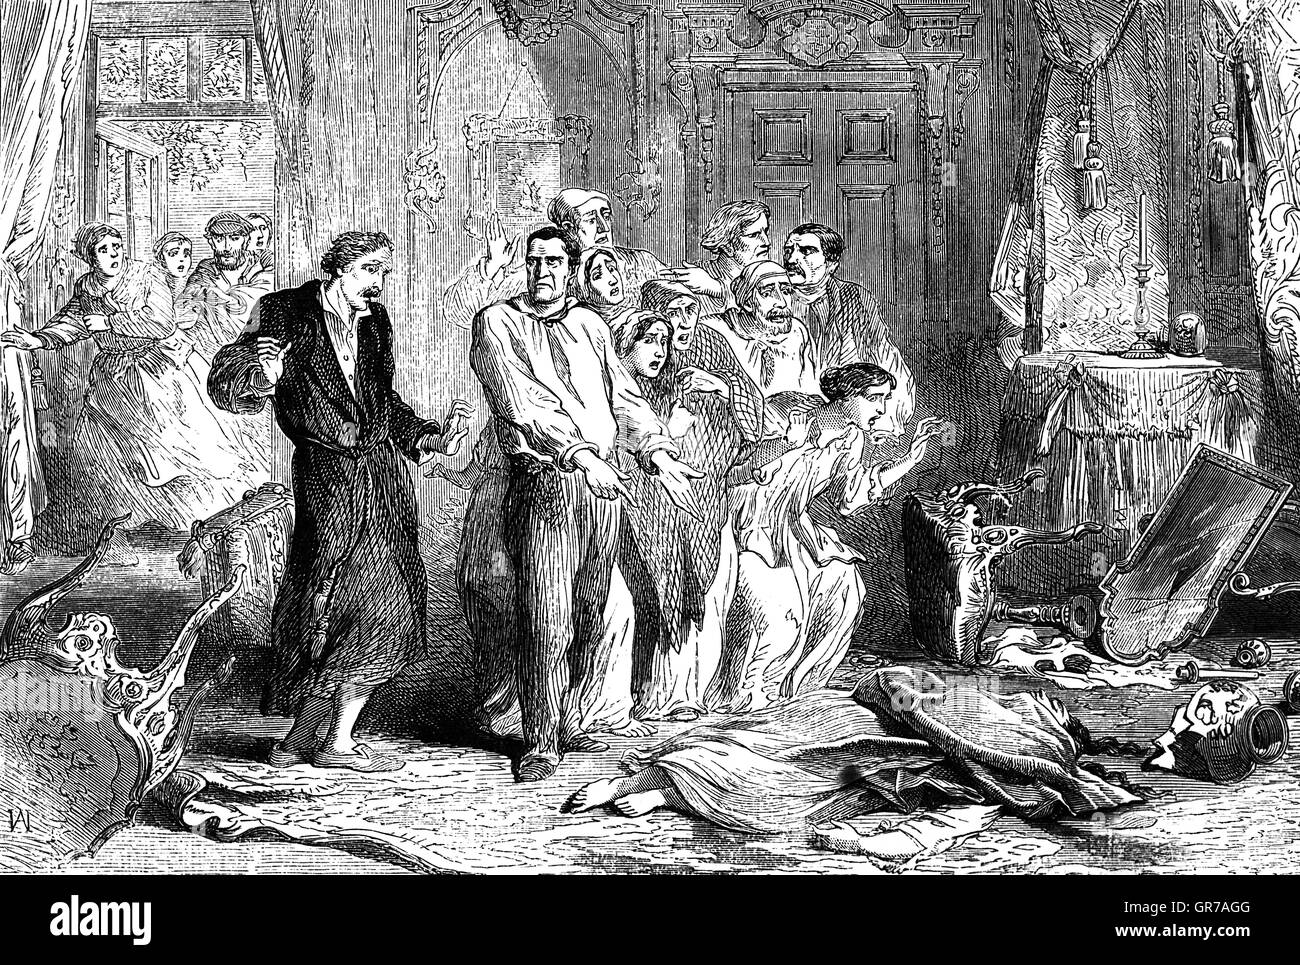 Мой муж герцог прозванный зверем 29. Маркиза де Плесси Пралин. Герцог Пралин. 1847 Год Неаполь ведьмы.